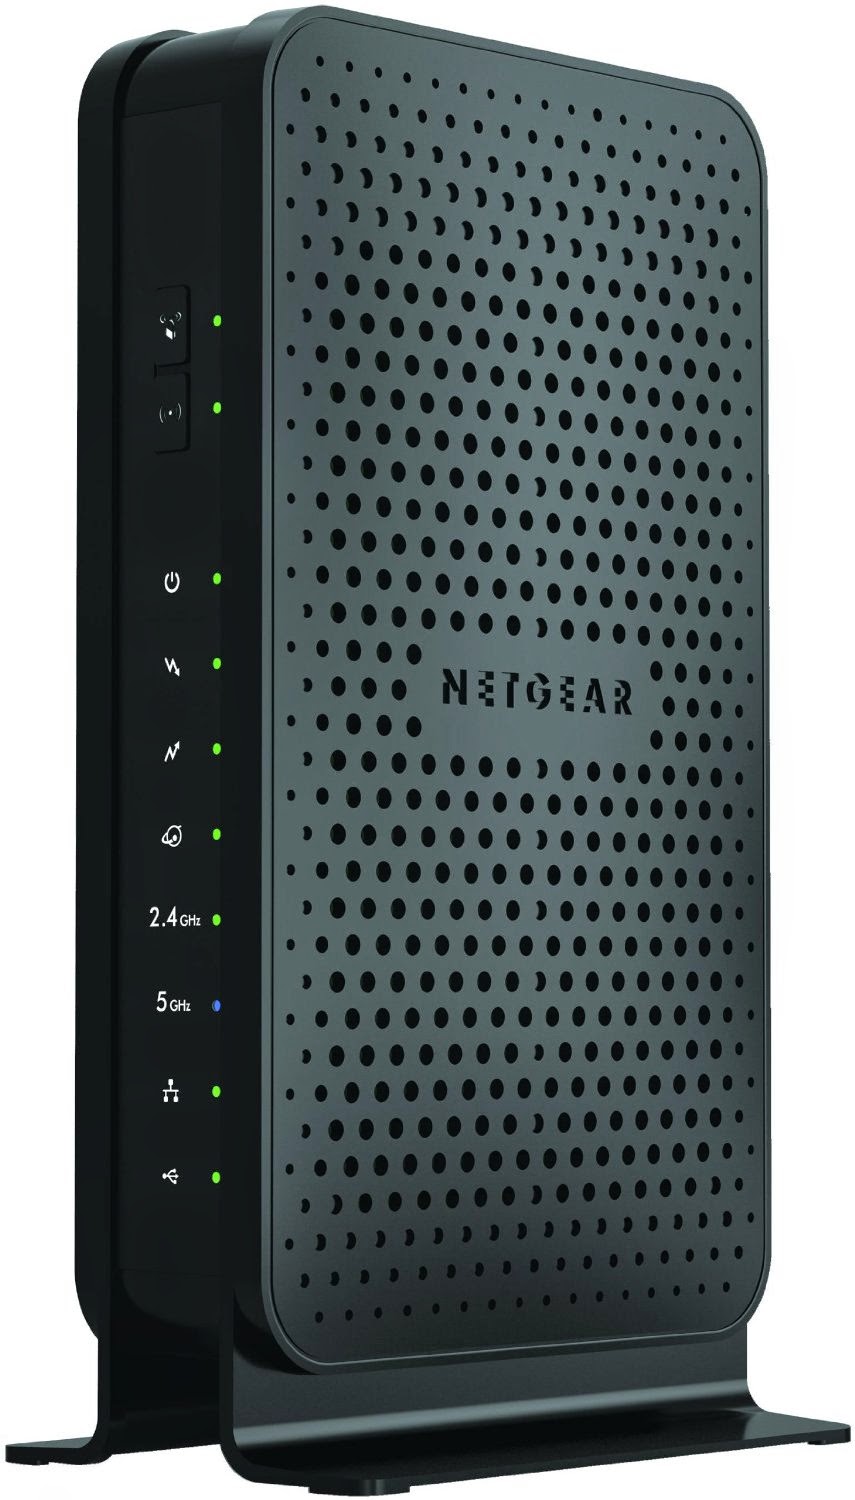 NETGEAR N600 Cable Modem Router (C3700) Review